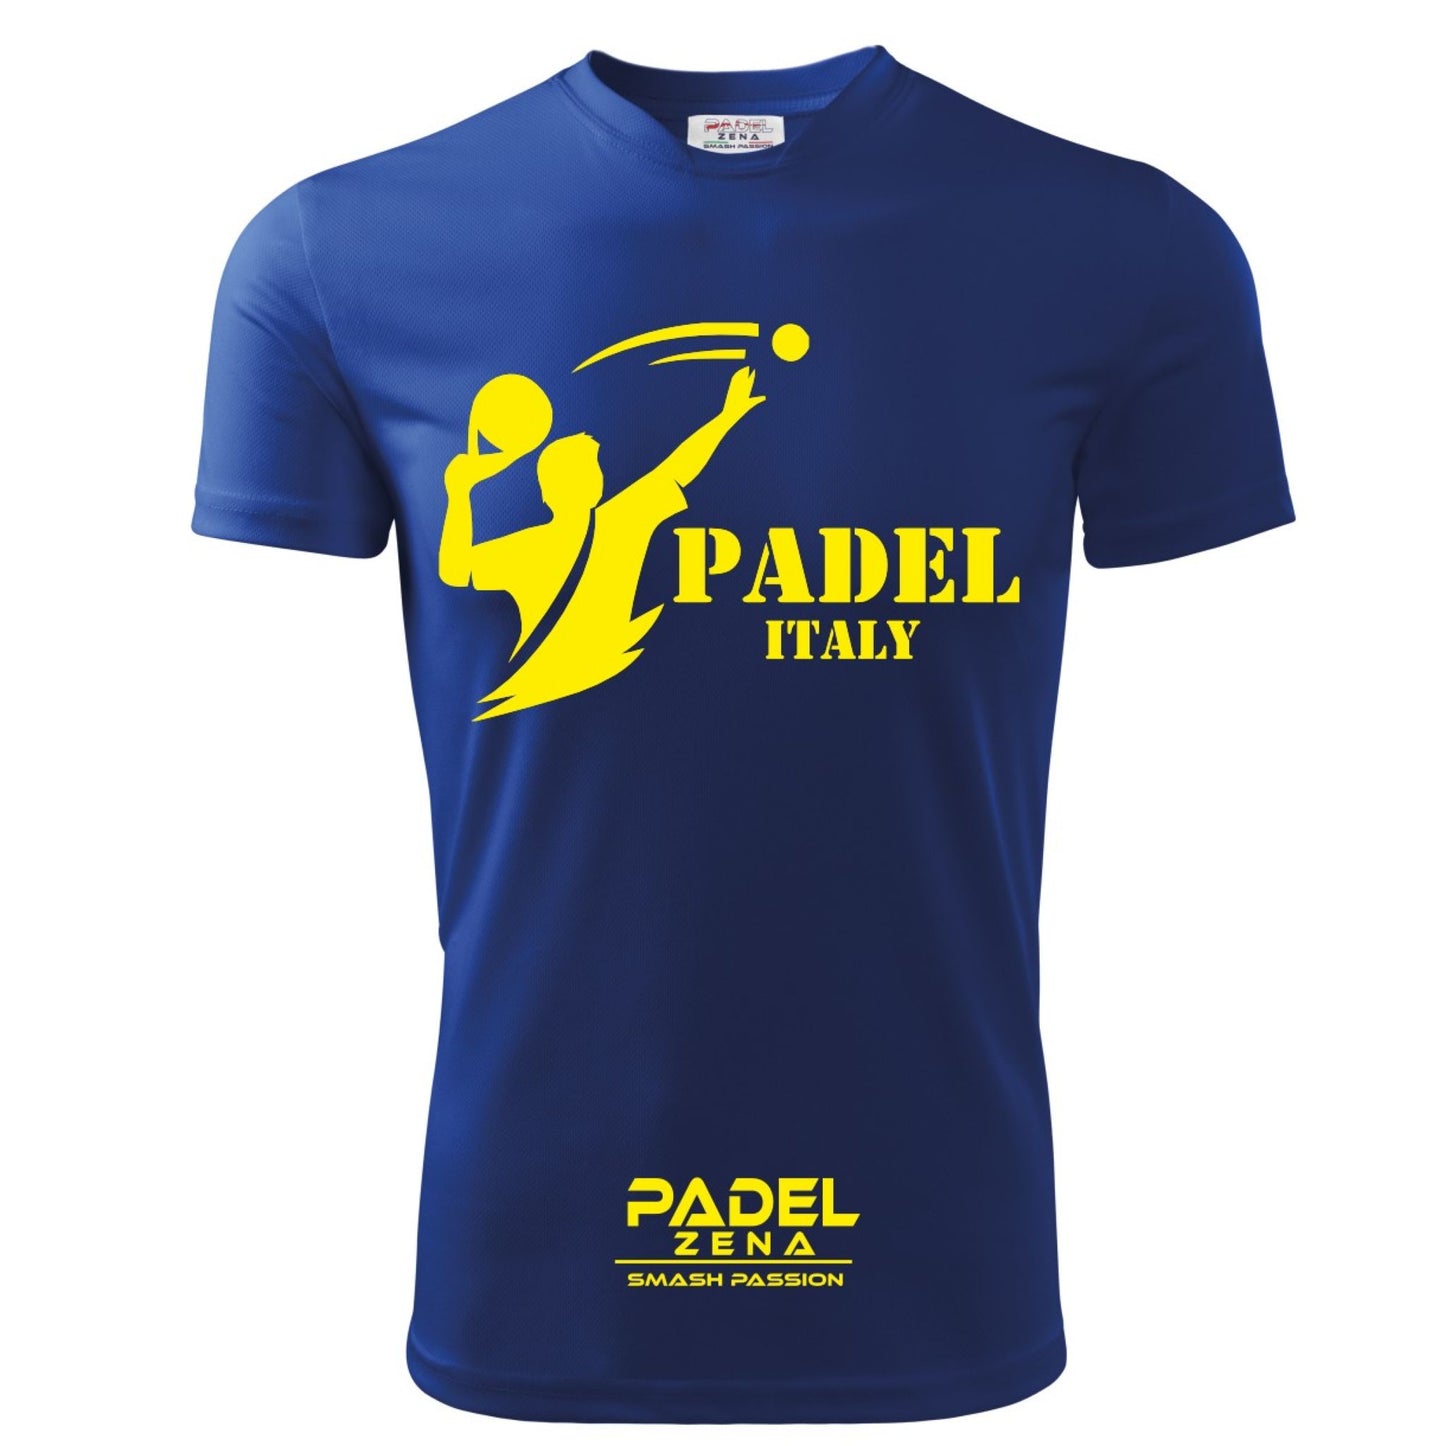 Padel ITALY